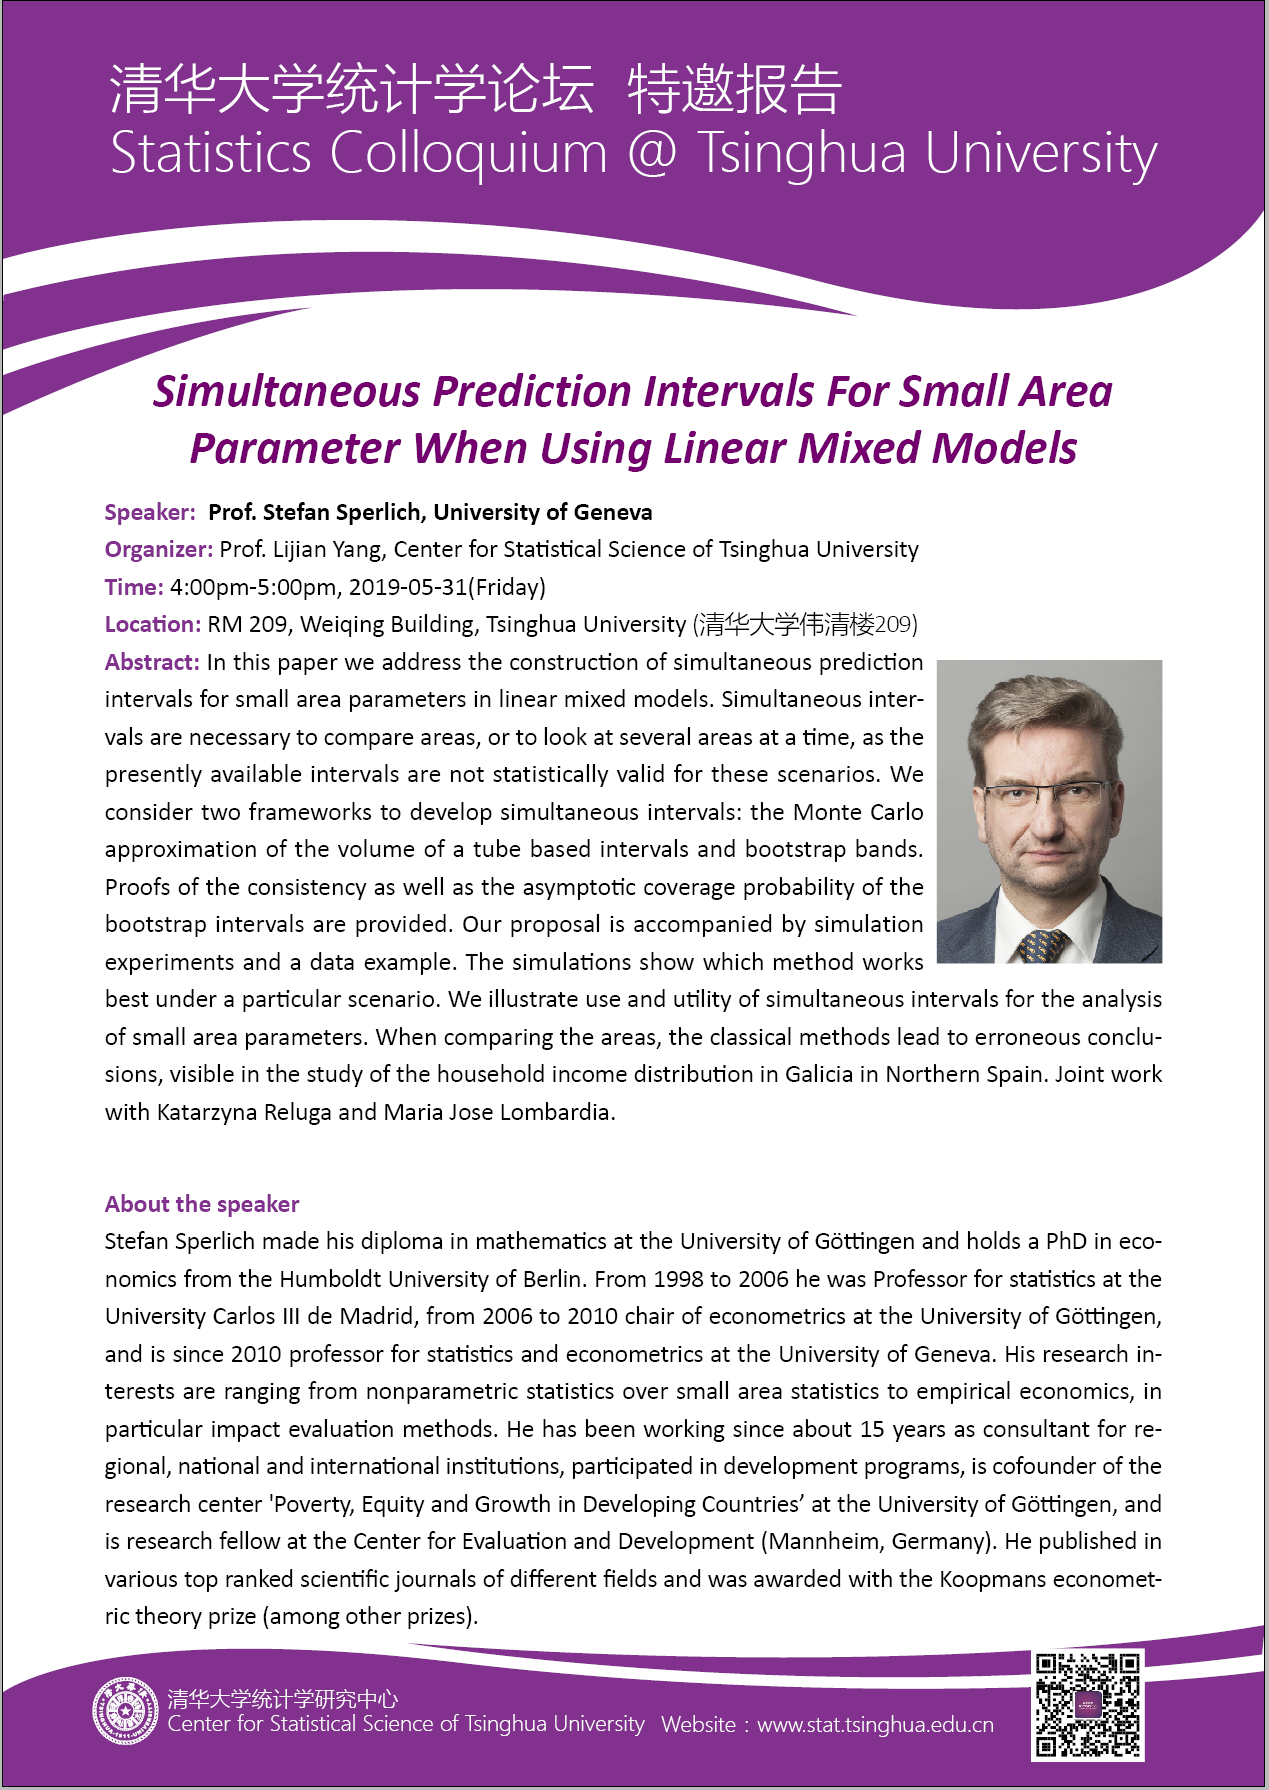 【统计学论坛】Simultaneous Prediction Intervals for Small Area Parameter When Using Linear Mixed Models